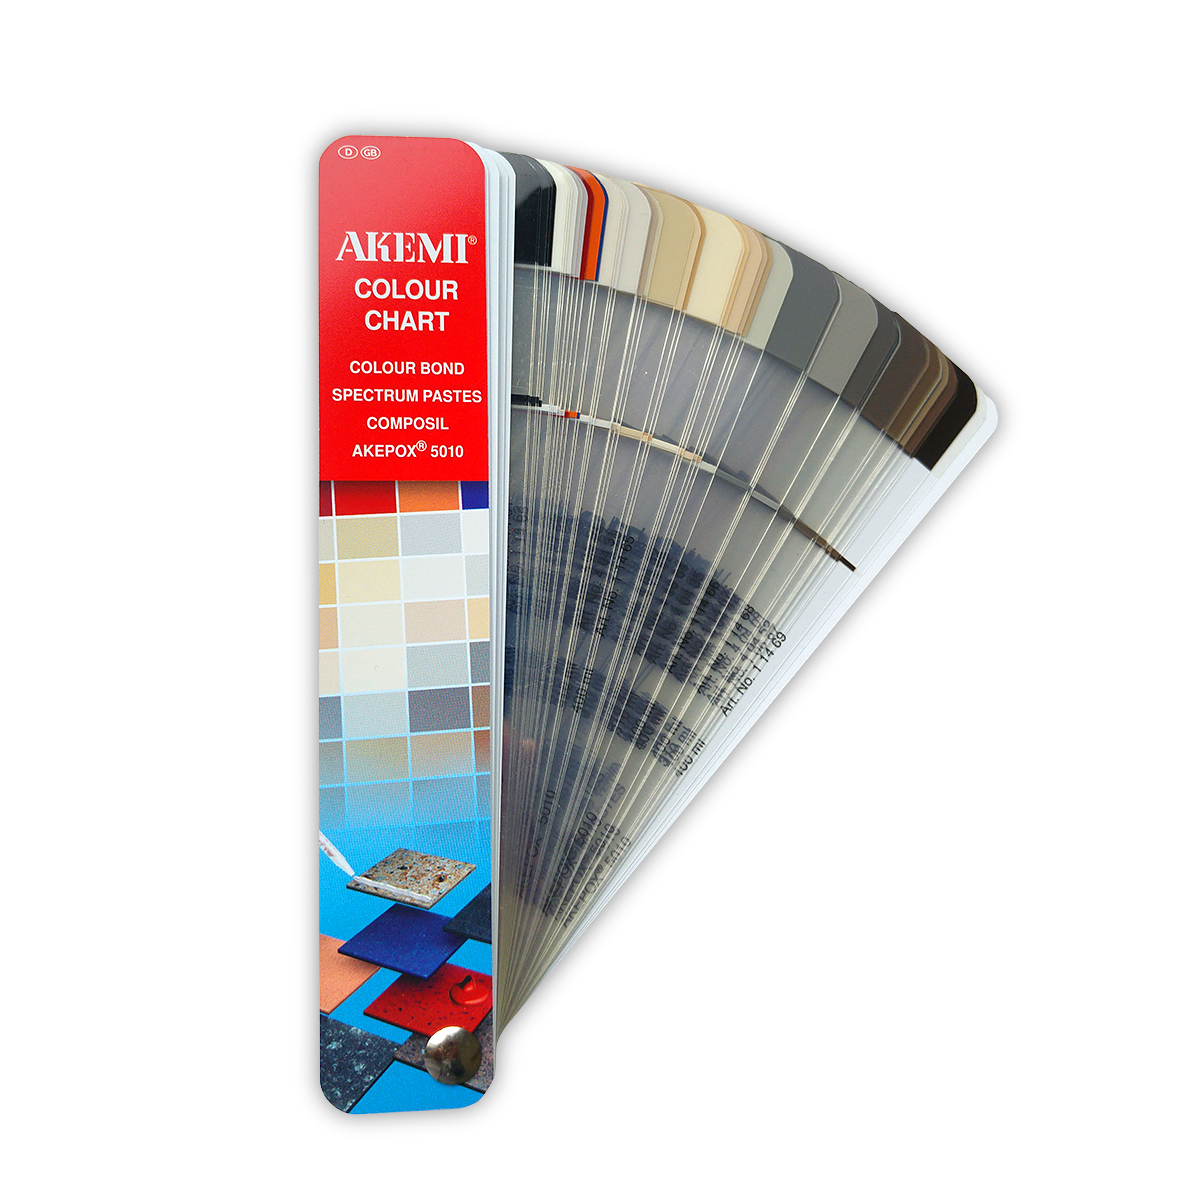 Colour Chart colour fan